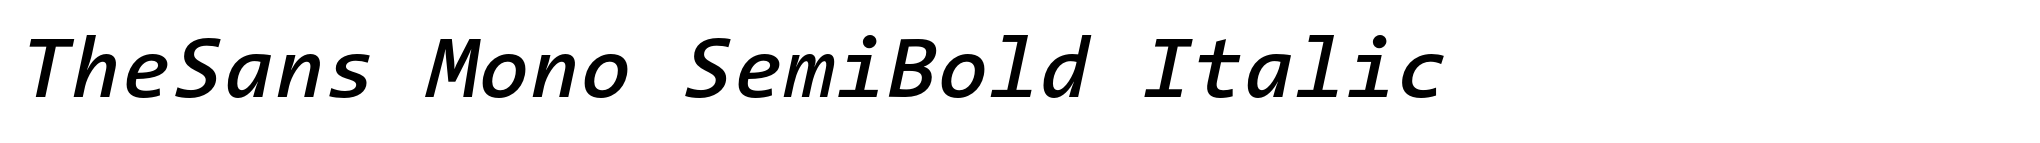 TheSans Mono SemiBold Italic image